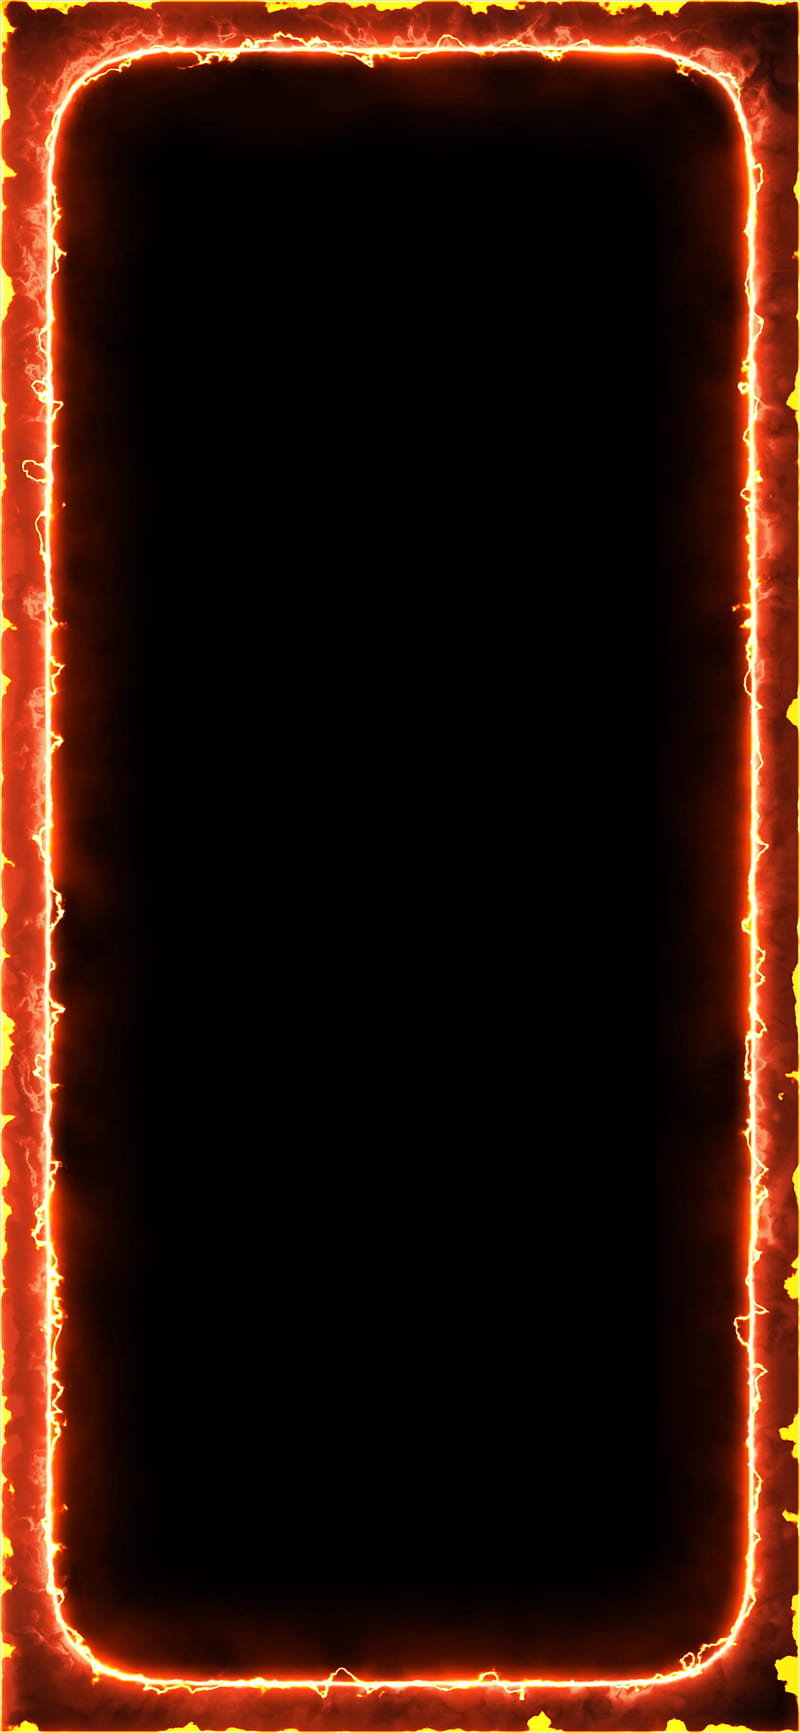 Batman Frame, amoled oled black background glowing fire flame orange neon  glowing, HD phone wallpaper